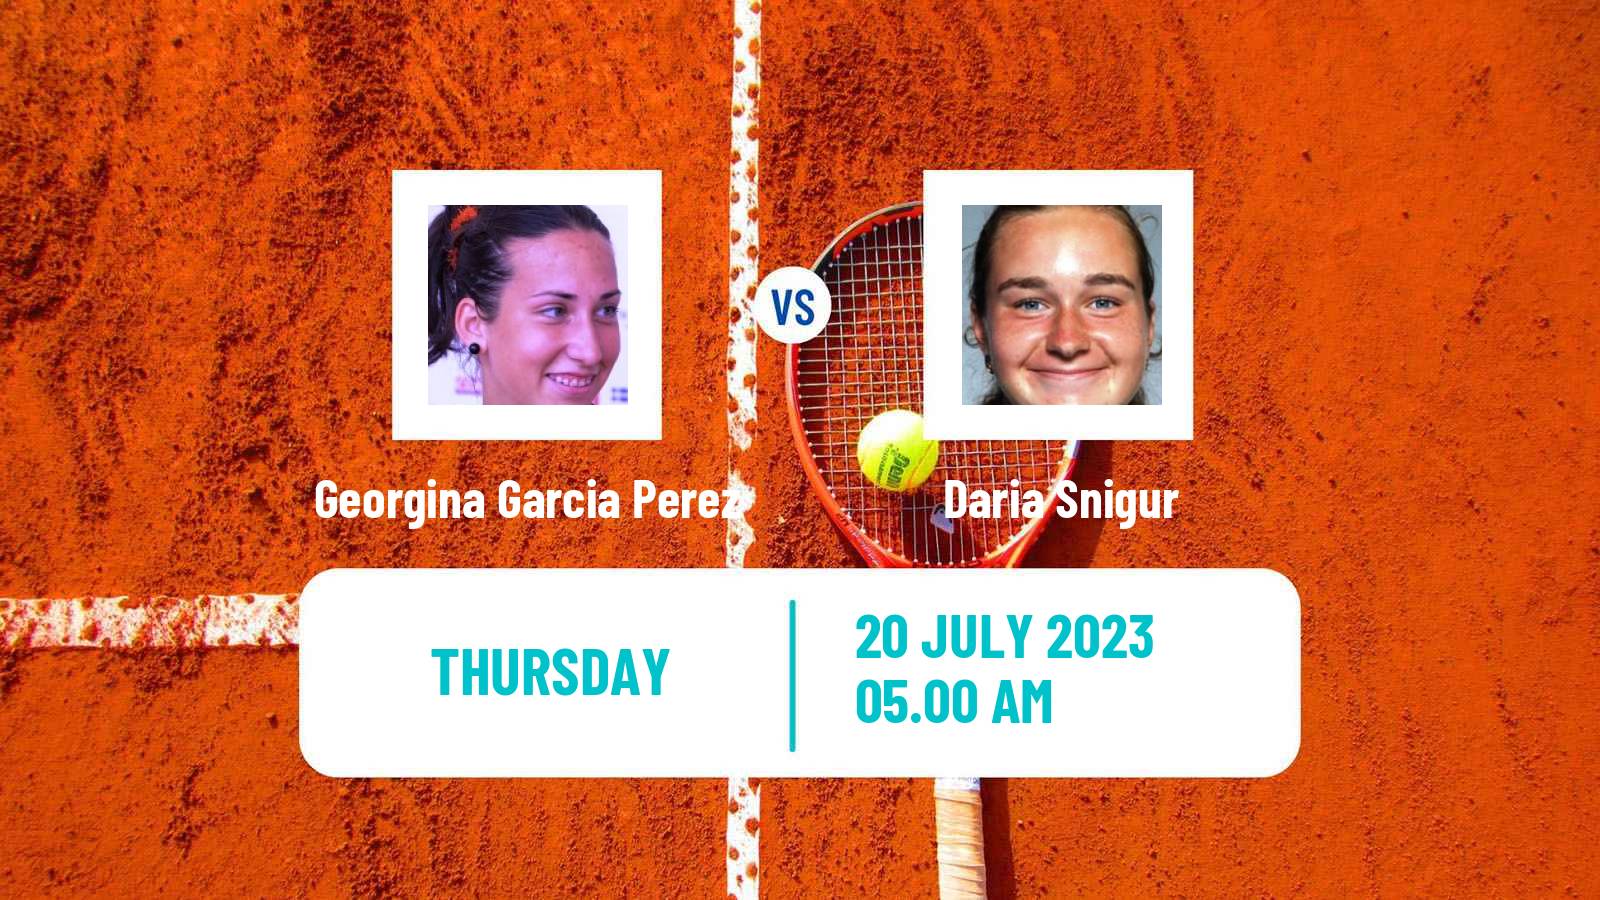 Tennis ITF W100 Vitoria Gasteiz Women Georgina Garcia Perez - Daria Snigur